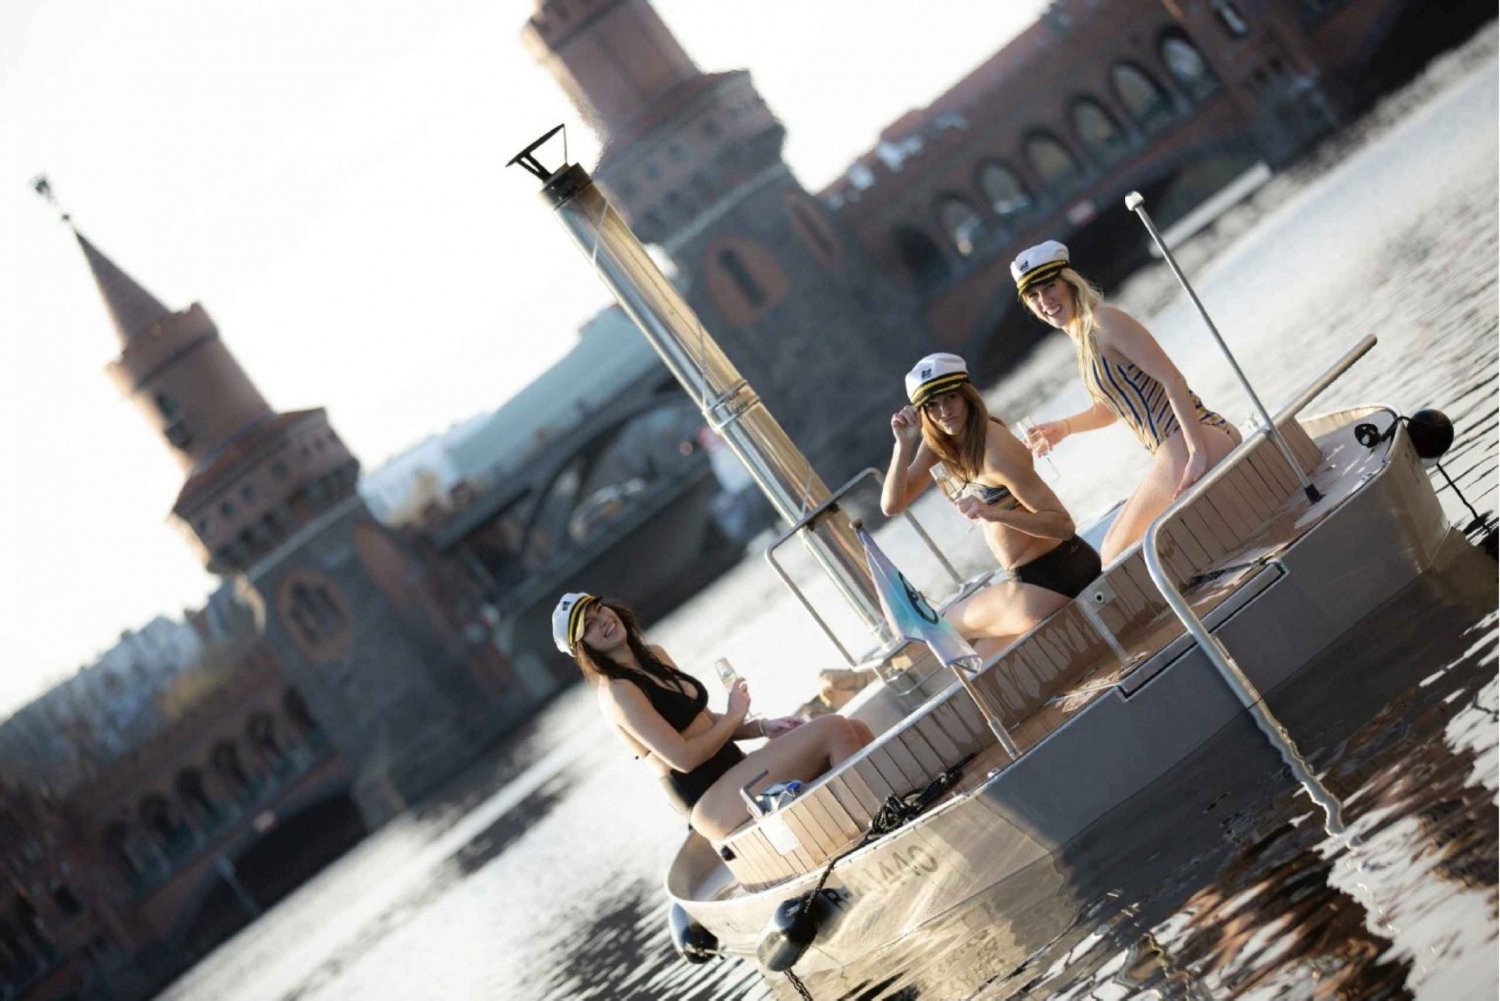 Berlijn: Zelf boot varen met badkuip